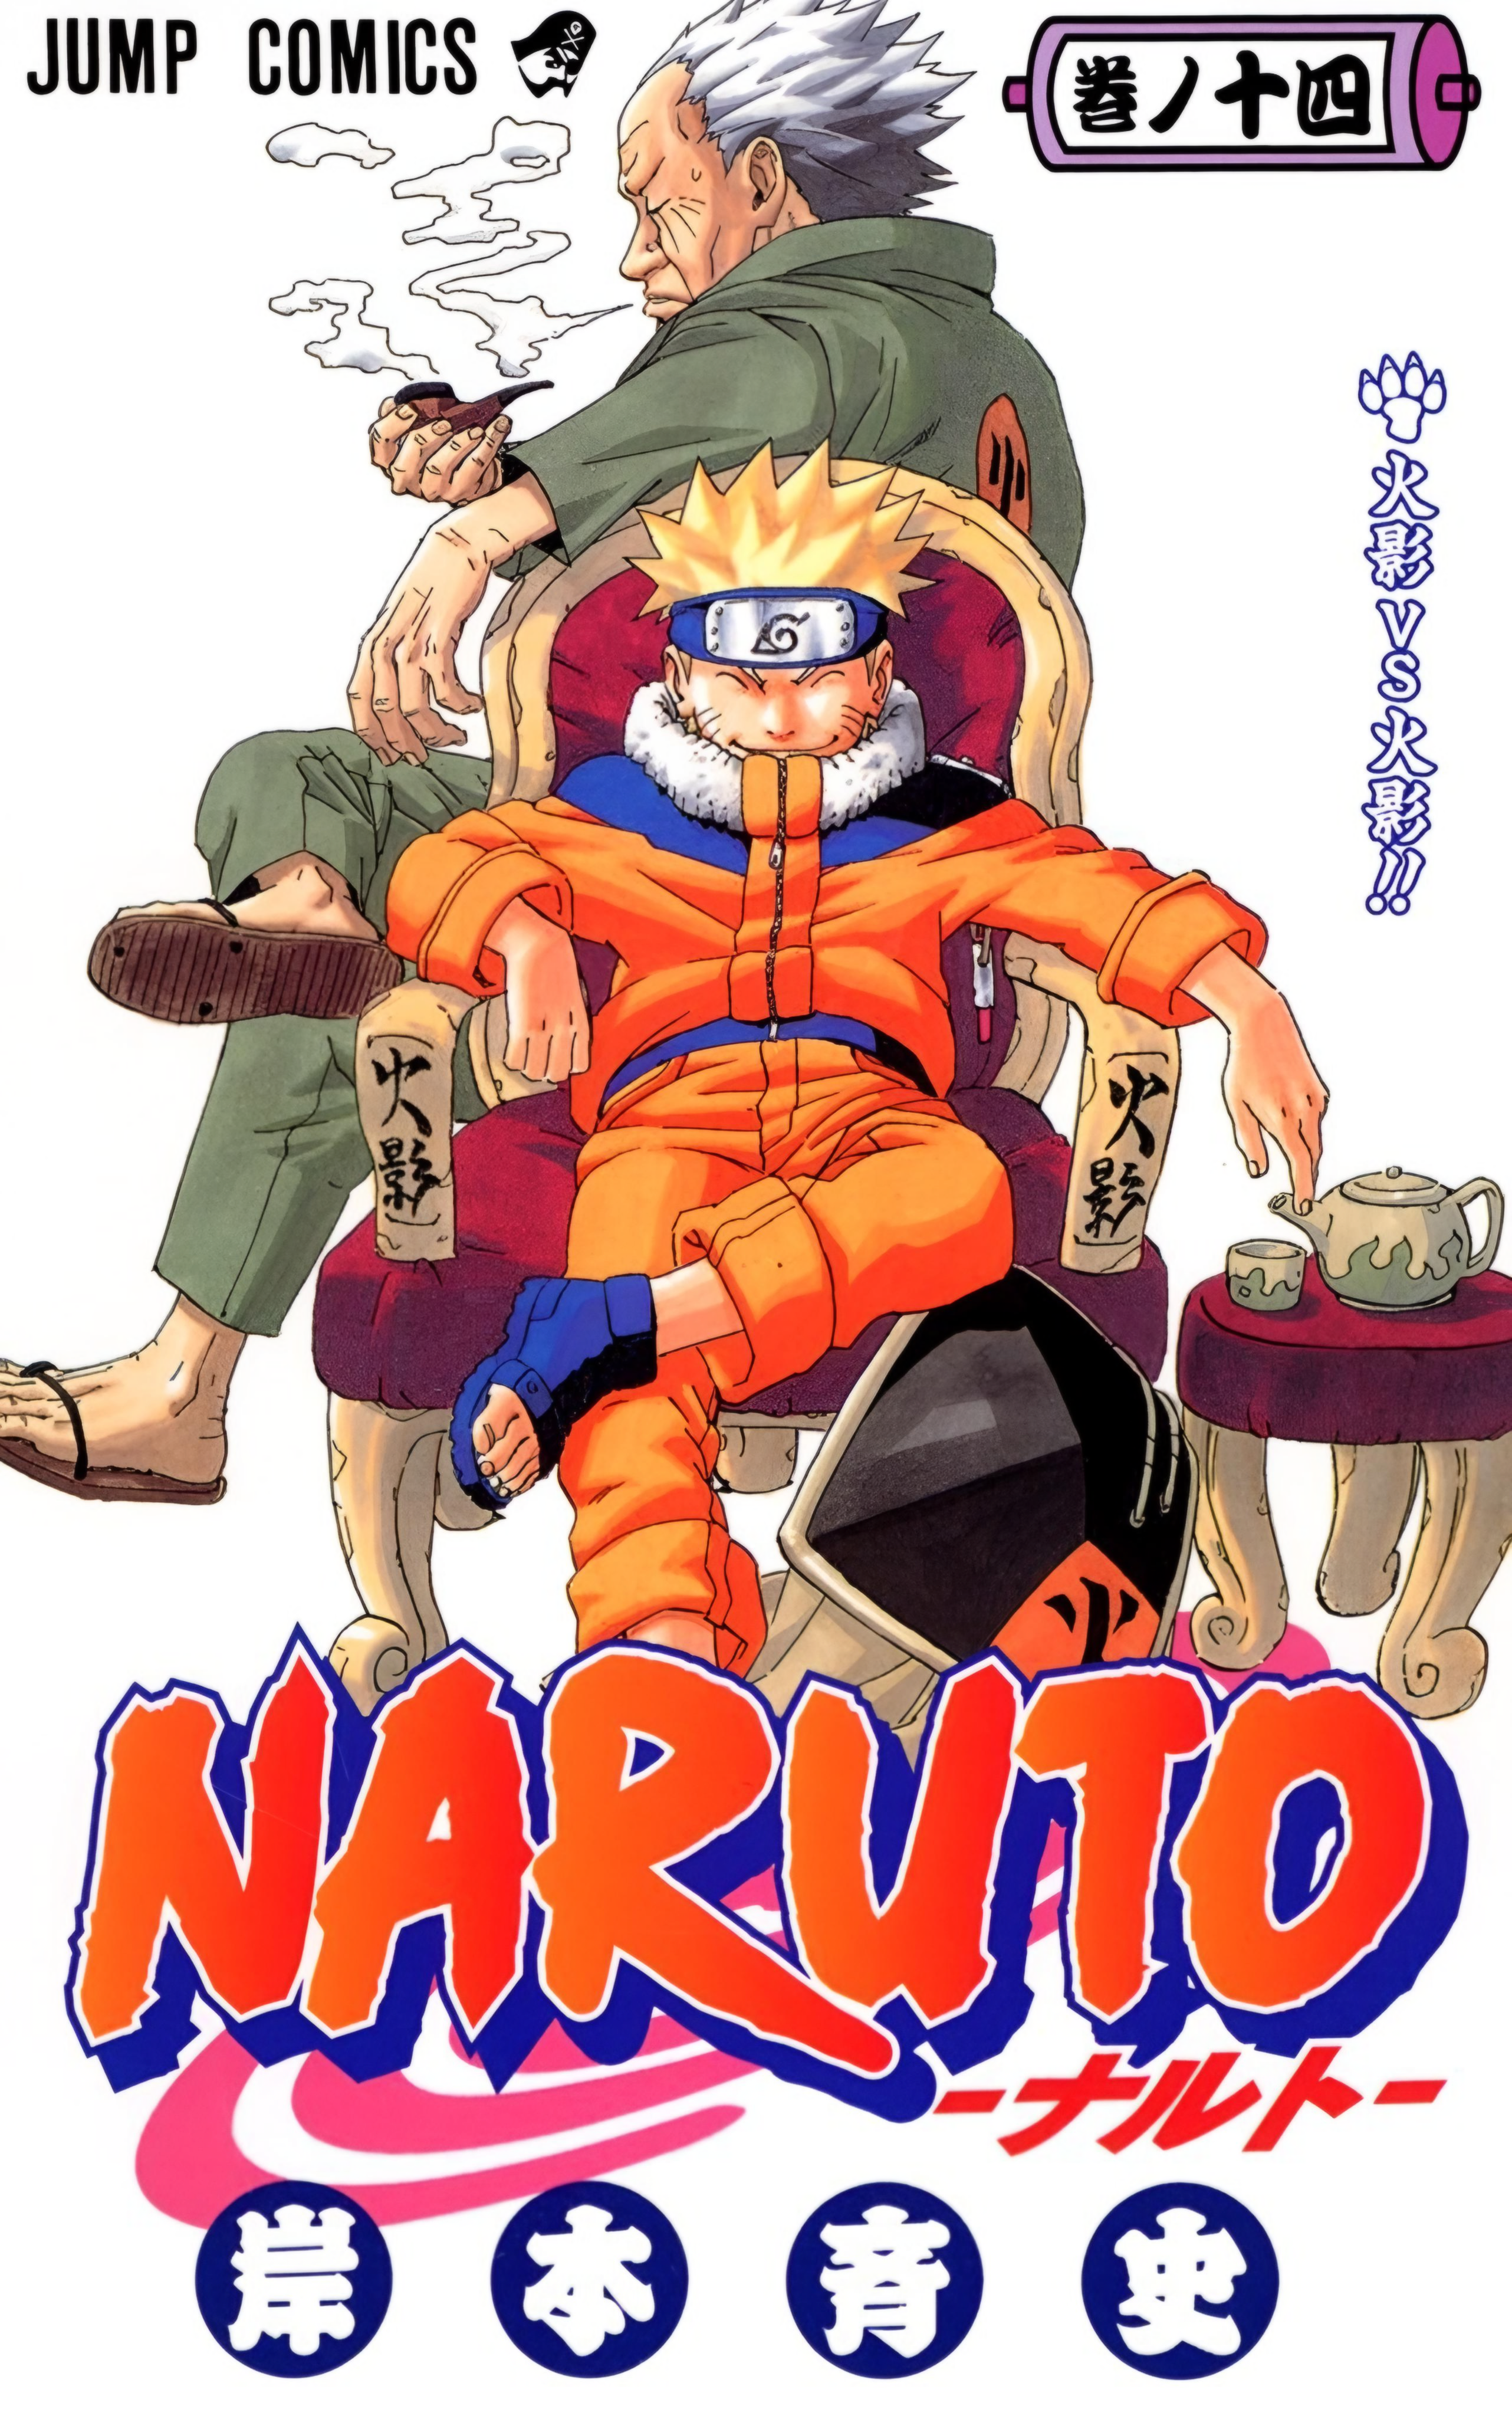 Bandeira Anime Naruto Uzumaki Sasuke Desenho Comic Hokage